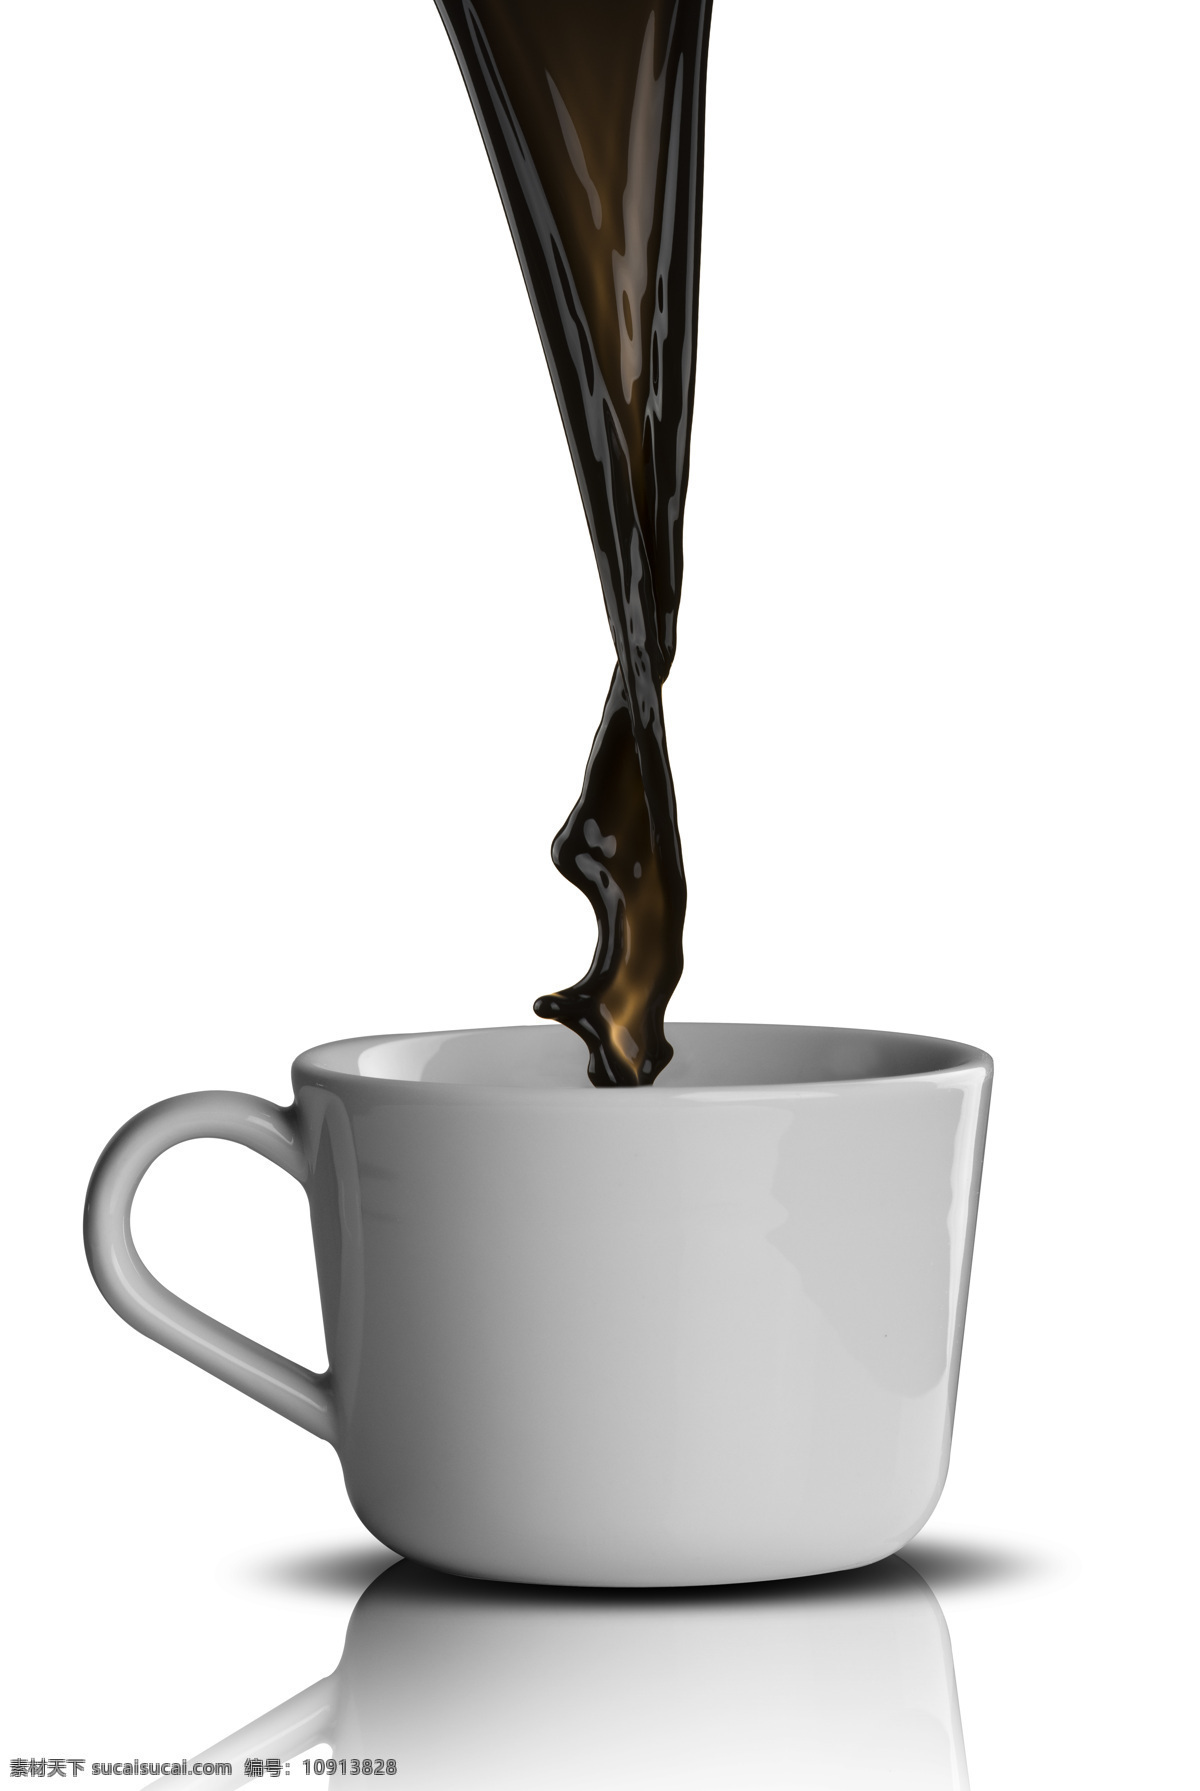 香浓浓的咖啡 咖啡 咖啡豆 咖啡原料 咖啡摄影 咖啡杯子 酒水饮料 餐饮美食 白色